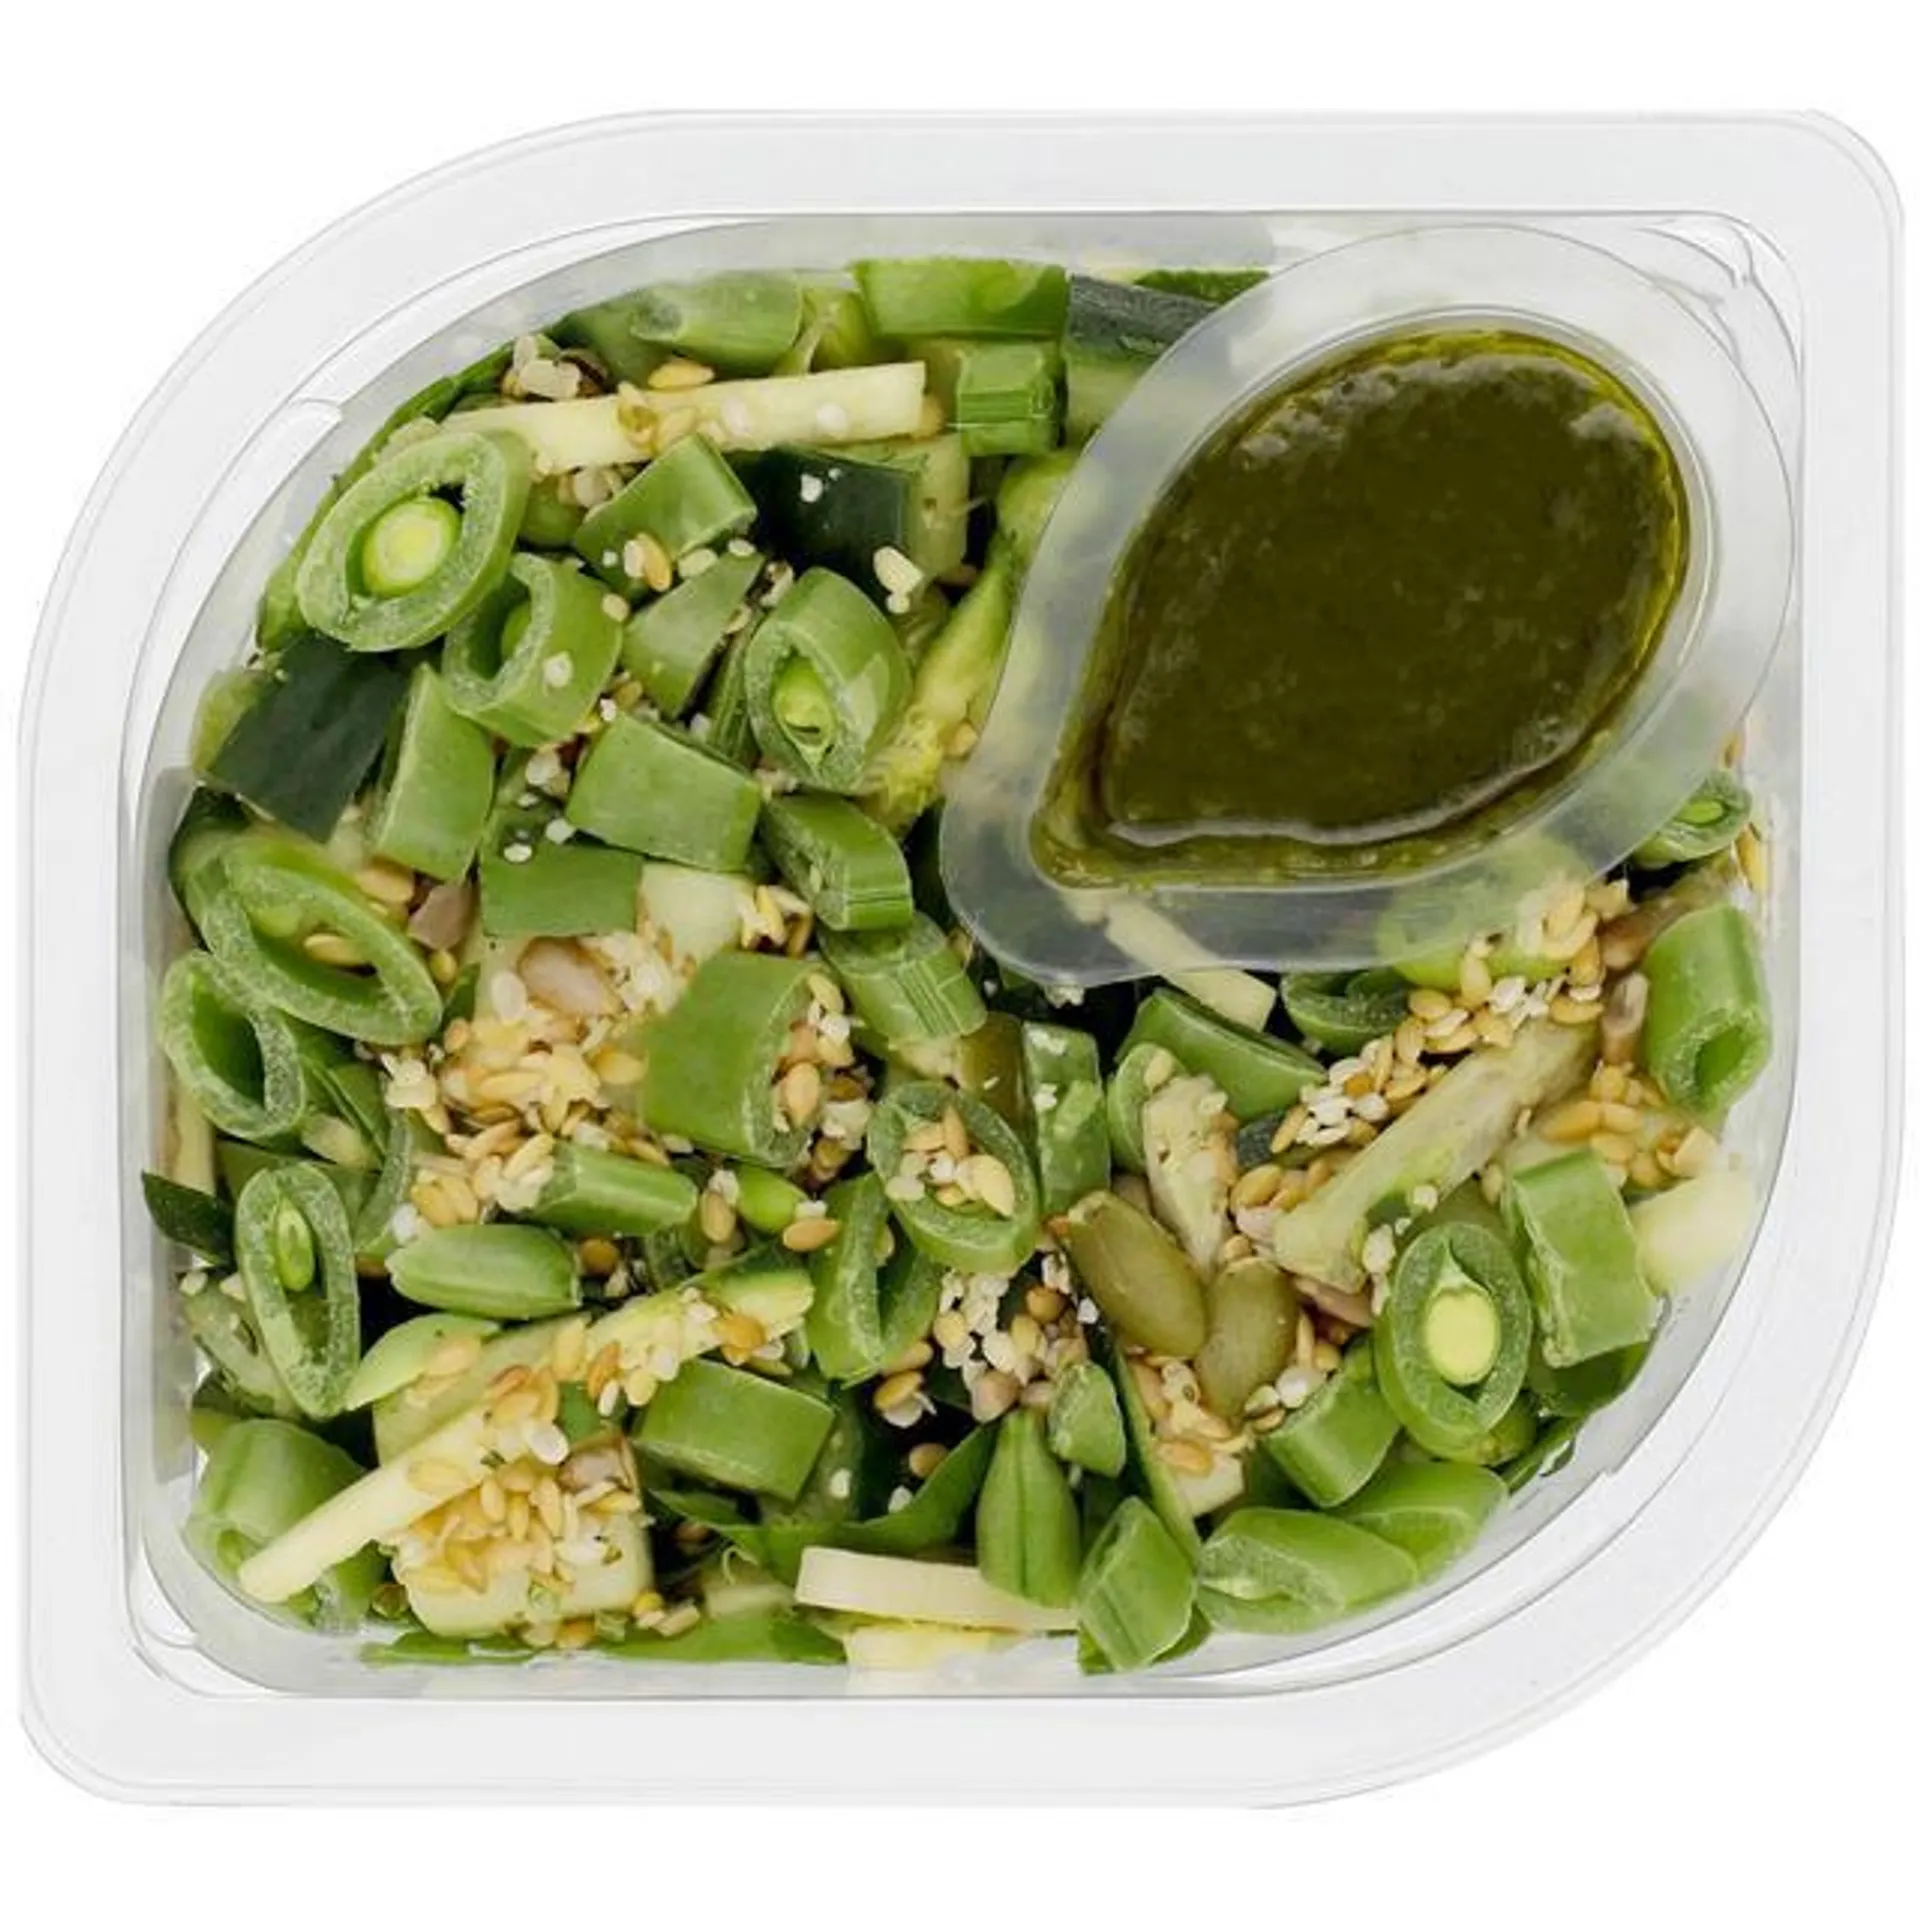 M&S Super Green Salad 190g